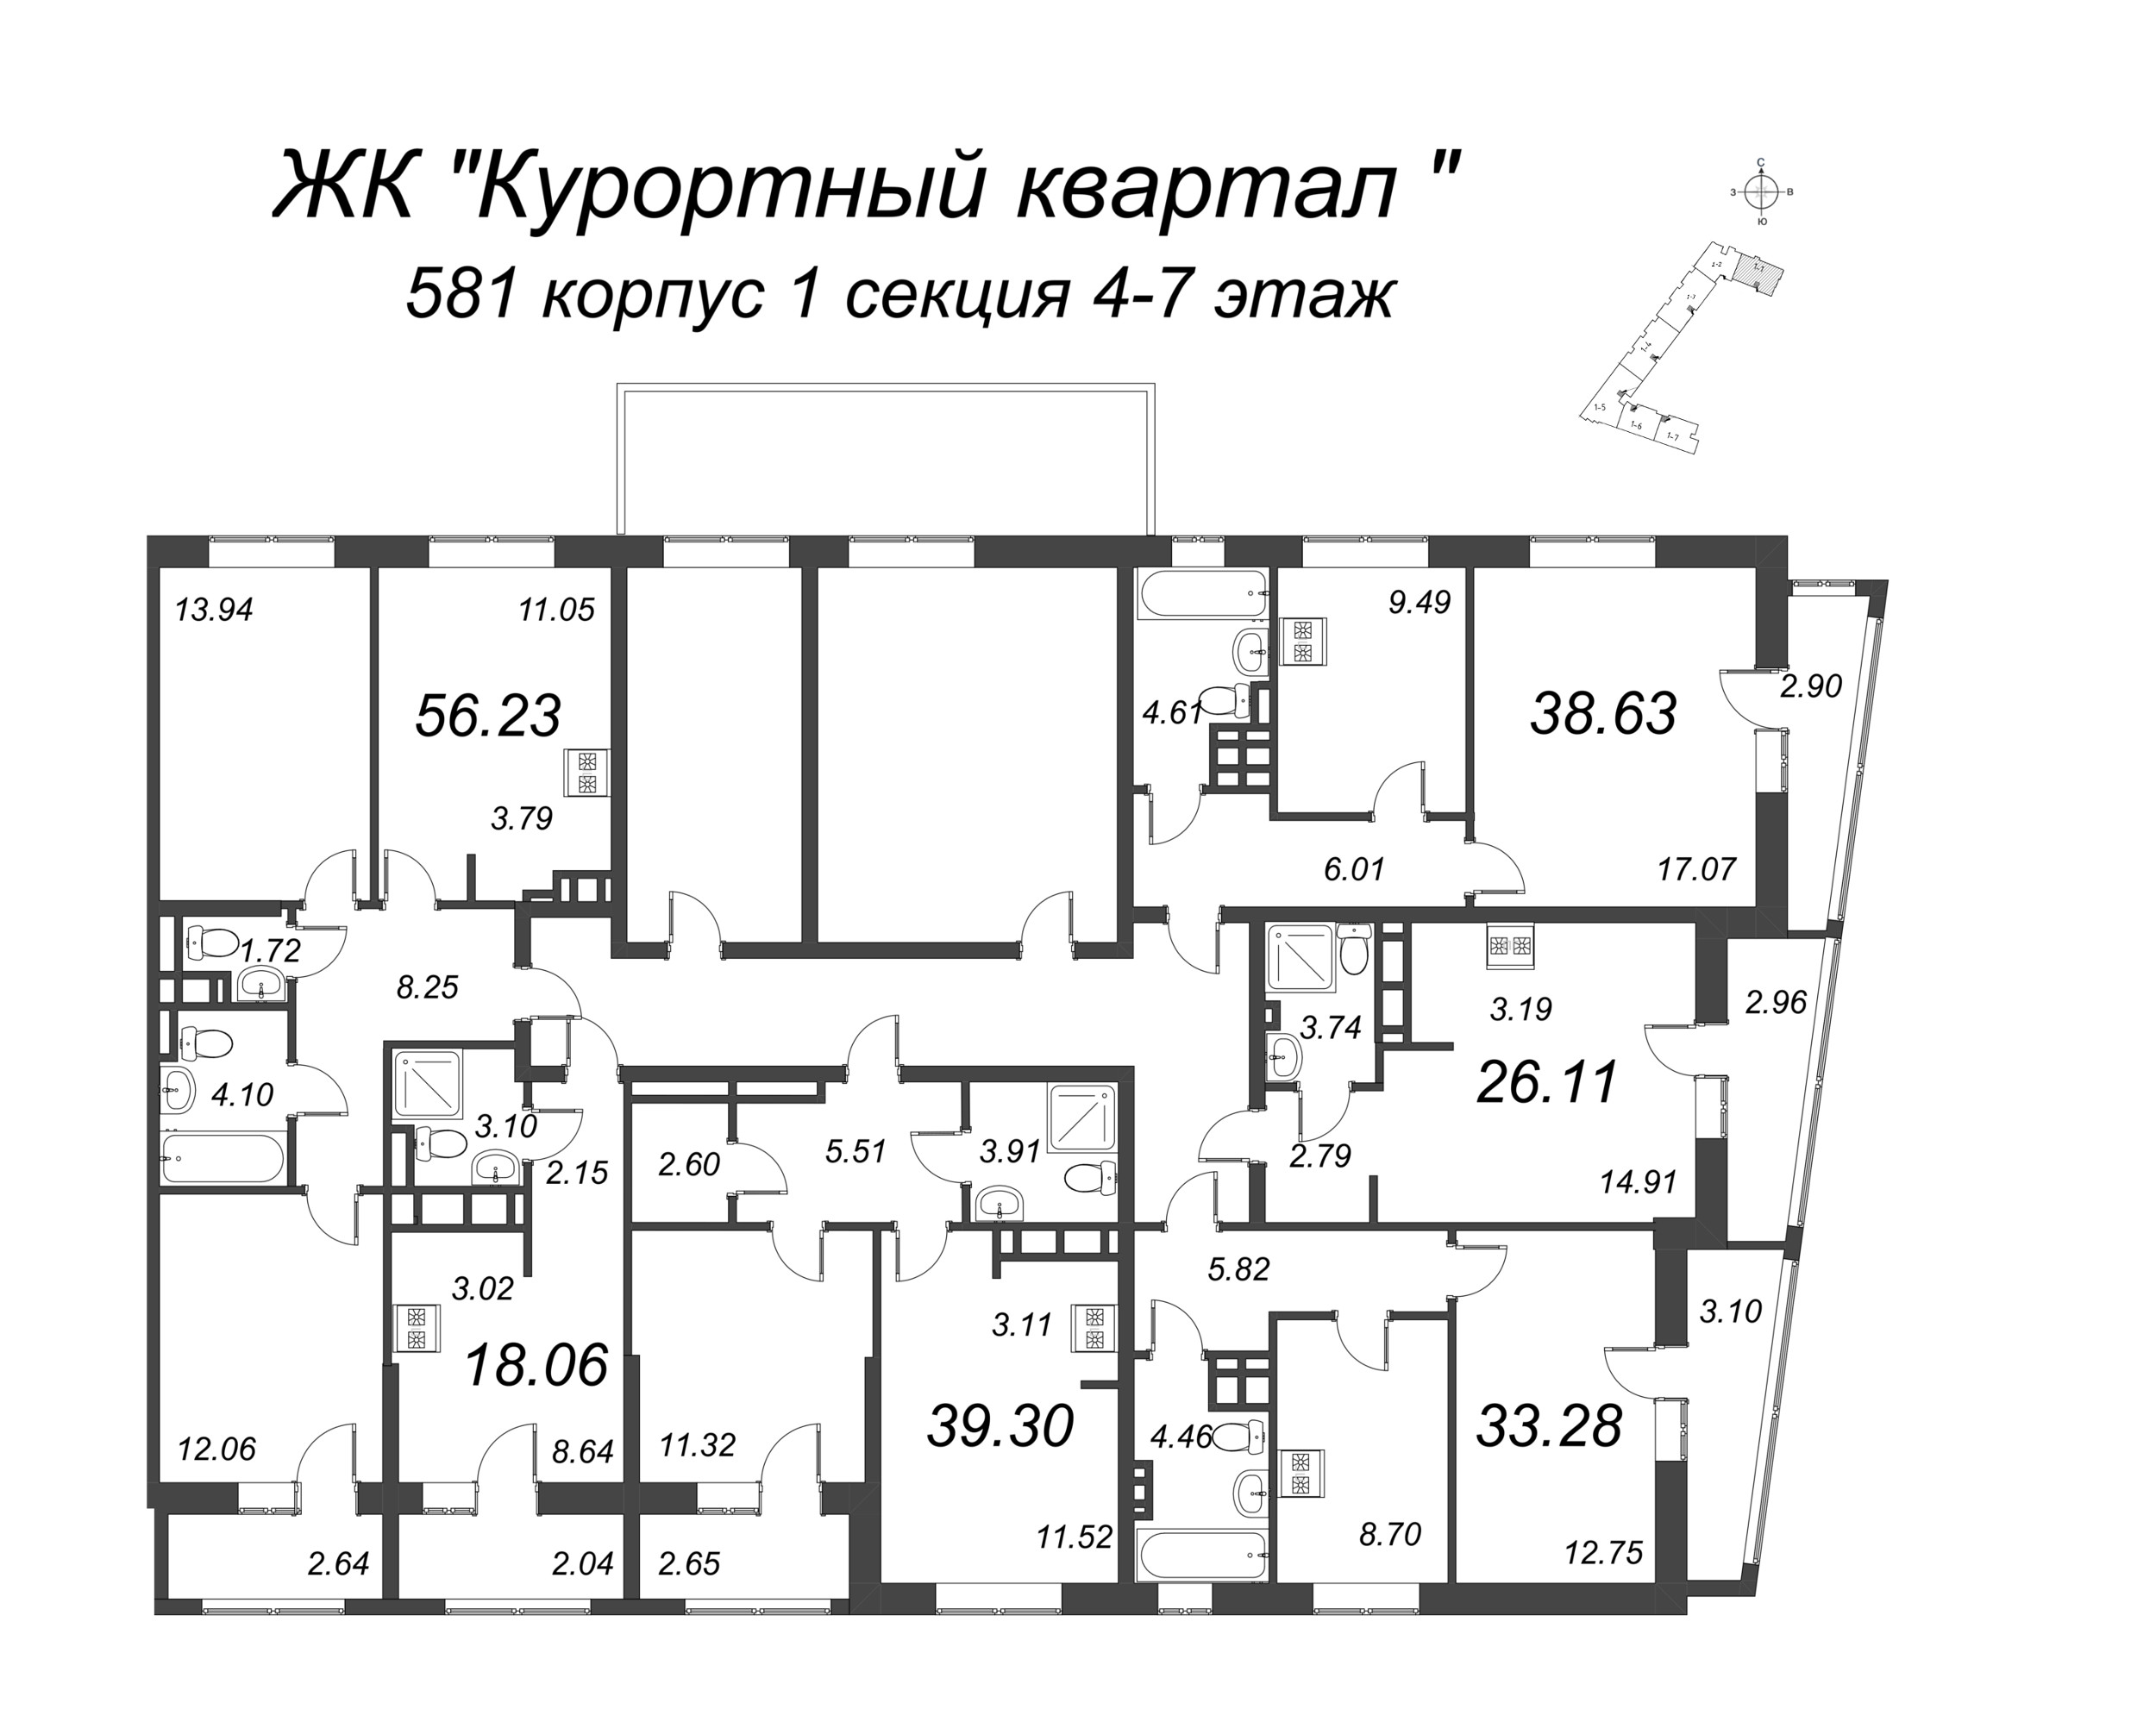 1-комнатная квартира, 33.28 м² в ЖК "Курортный Квартал" - планировка этажа